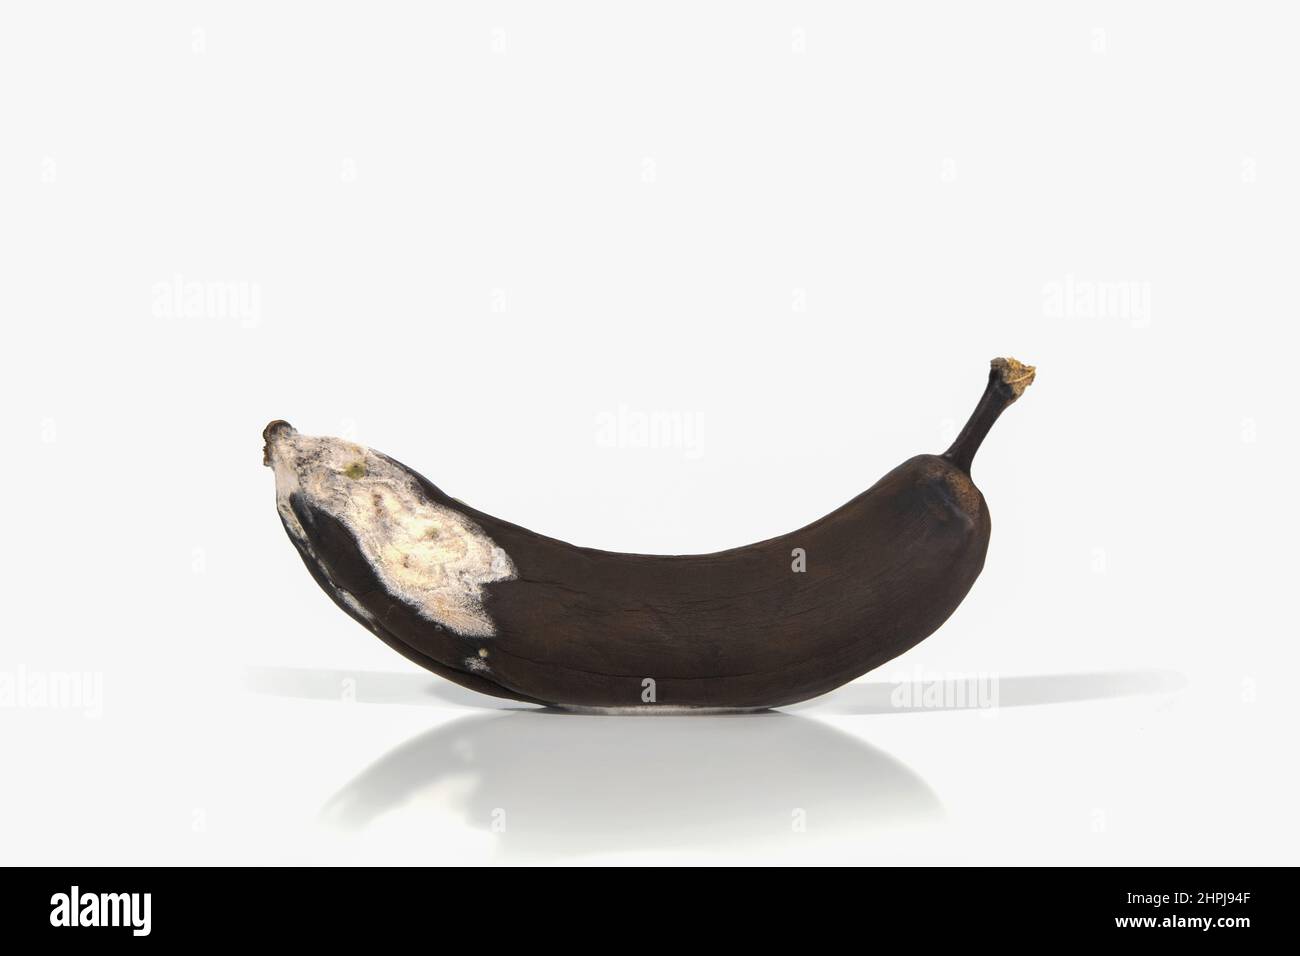 Banana rovinata su sfondo bianco con ombre e riflessi duri. Rifiuti organici frutta troppo matura. Cibi brutti, frutta. Spazio di copia Foto Stock